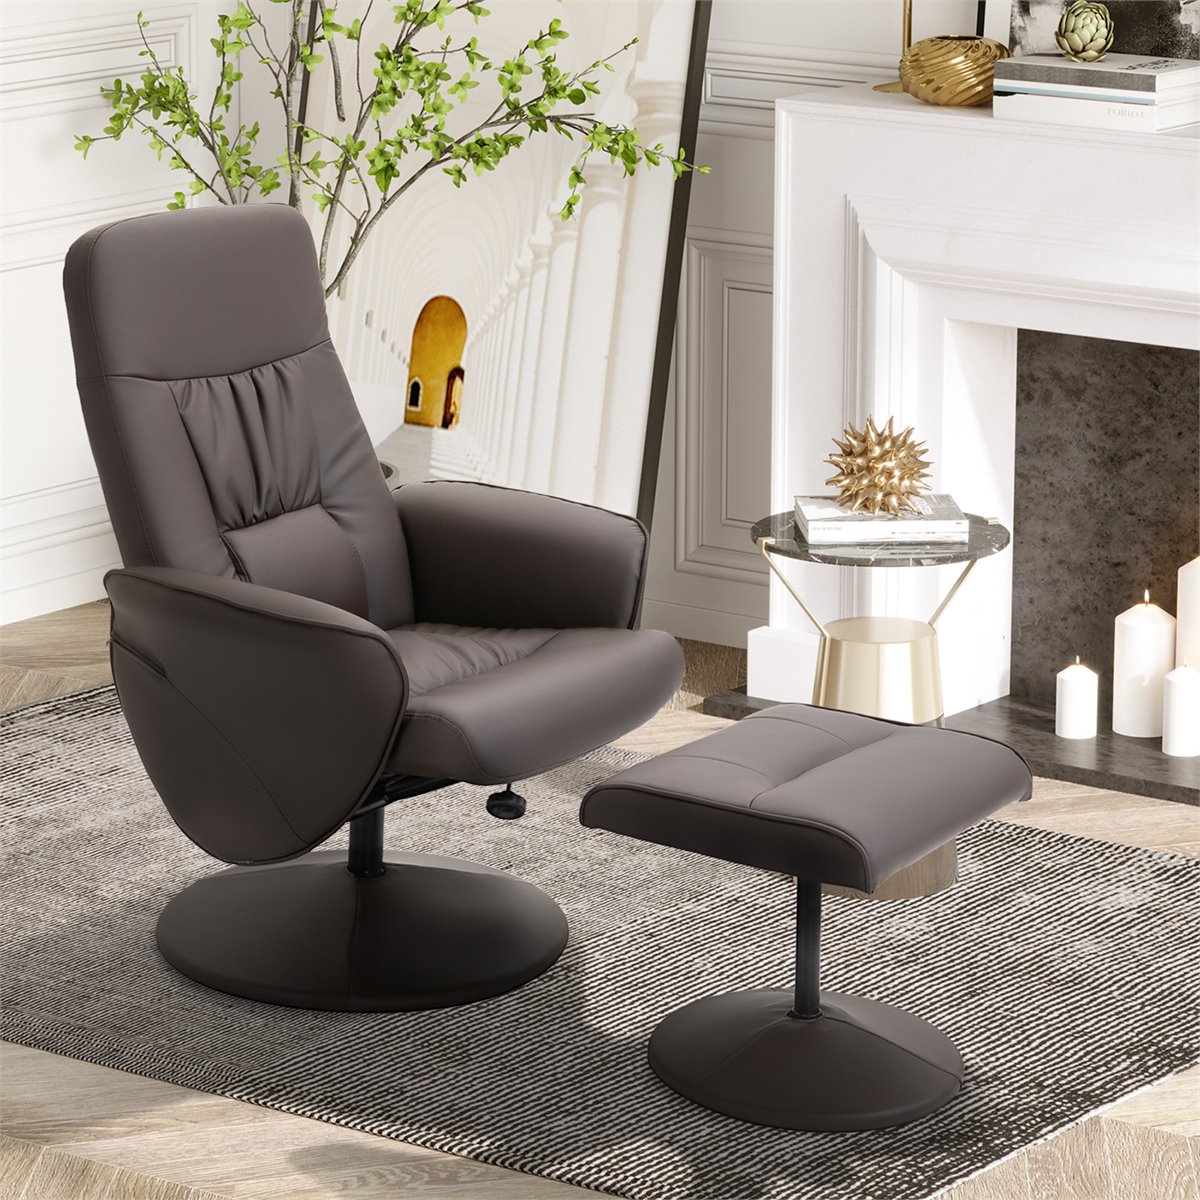 HOMCOM sillón reclinable de salón sillón relax reclinable manual tapizado  en tela con reposapiés carga 160